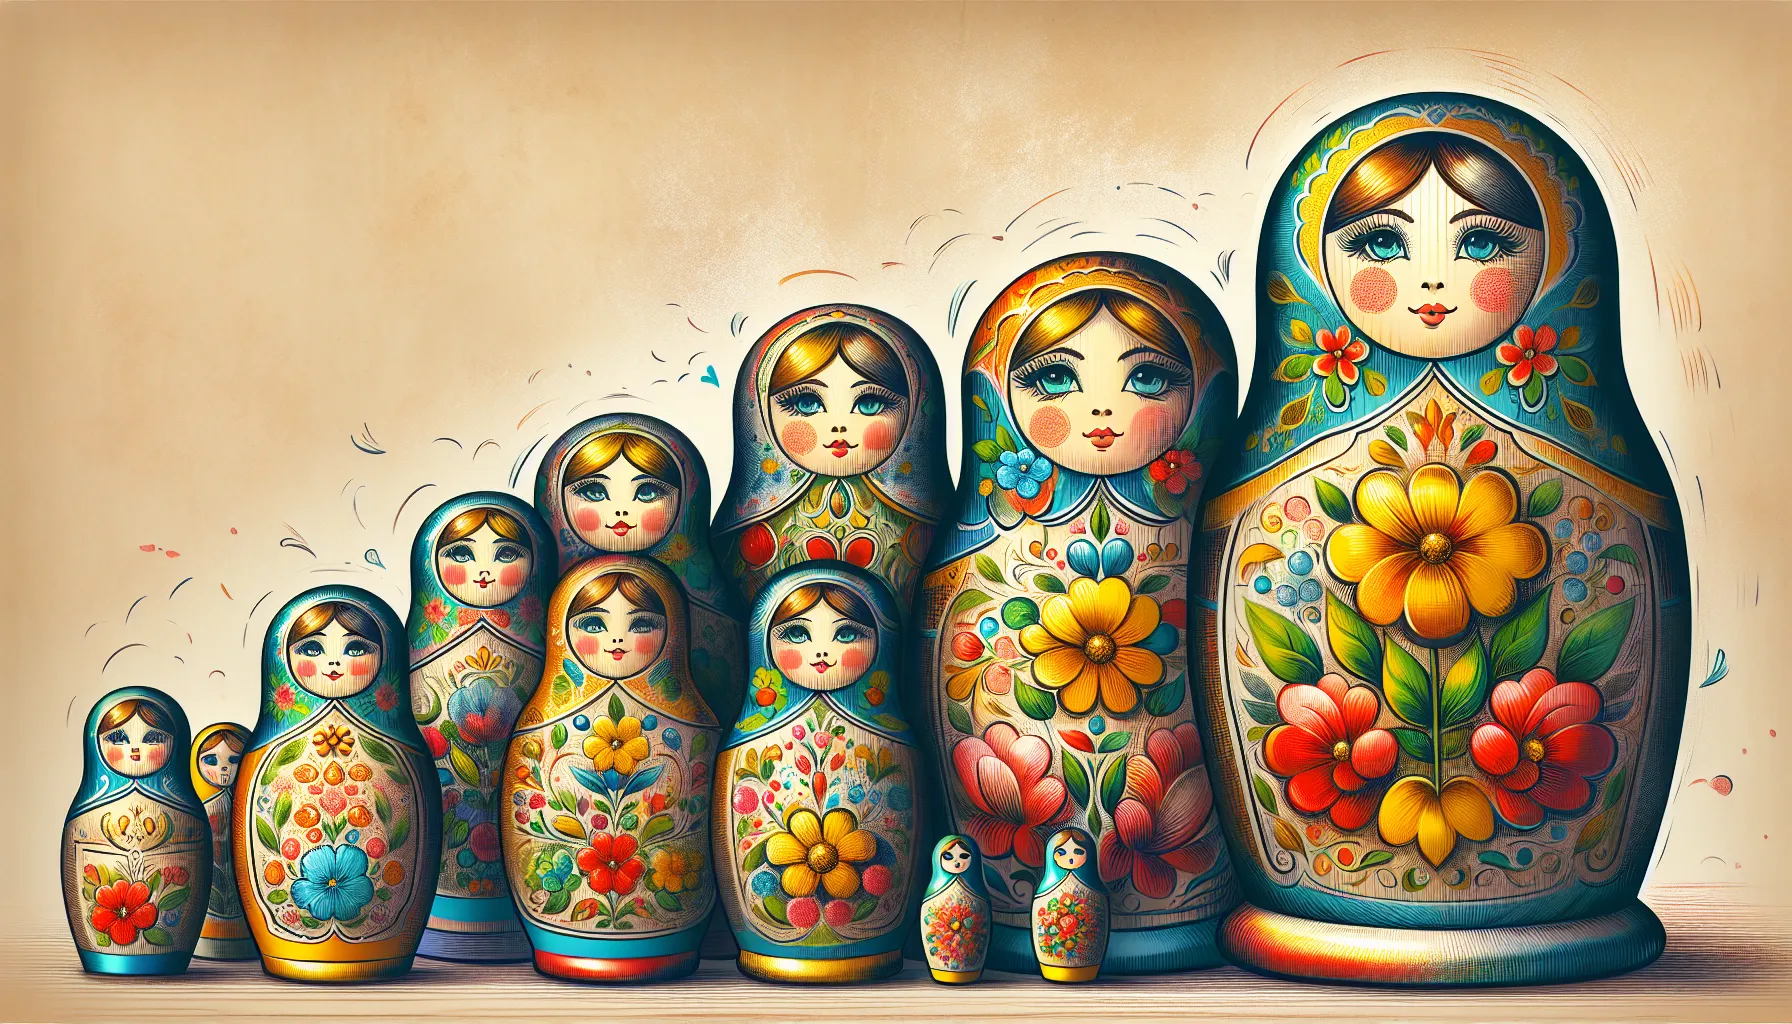 As bonecas russas são uma forma de arte e história em miniatura. Também conhecidas como matrioskas, essas bonecas são feitas de madeira e são famosas pela sua forma única e empilhável.

Cada boneca russa é composta por várias peças que se encaixam umas nas outras. A maior boneca é geralmente pintada à mão e possui um design elaborado, muitas vezes representando uma